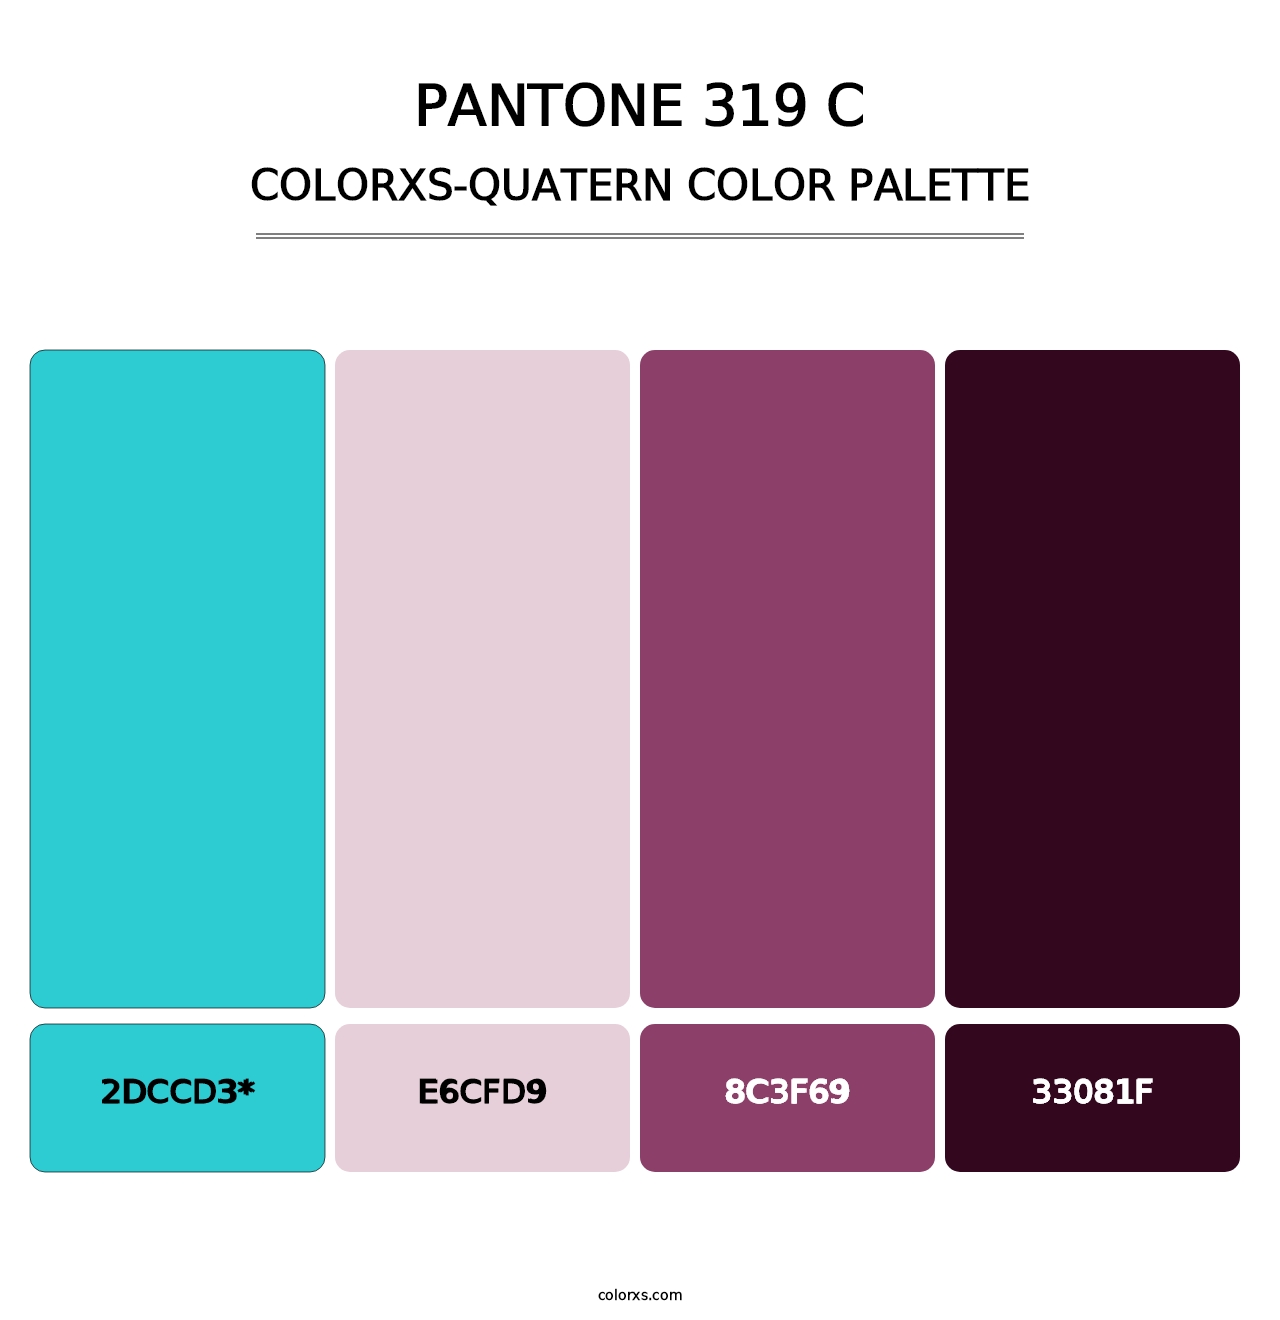 PANTONE 319 C - Colorxs Quatern Palette